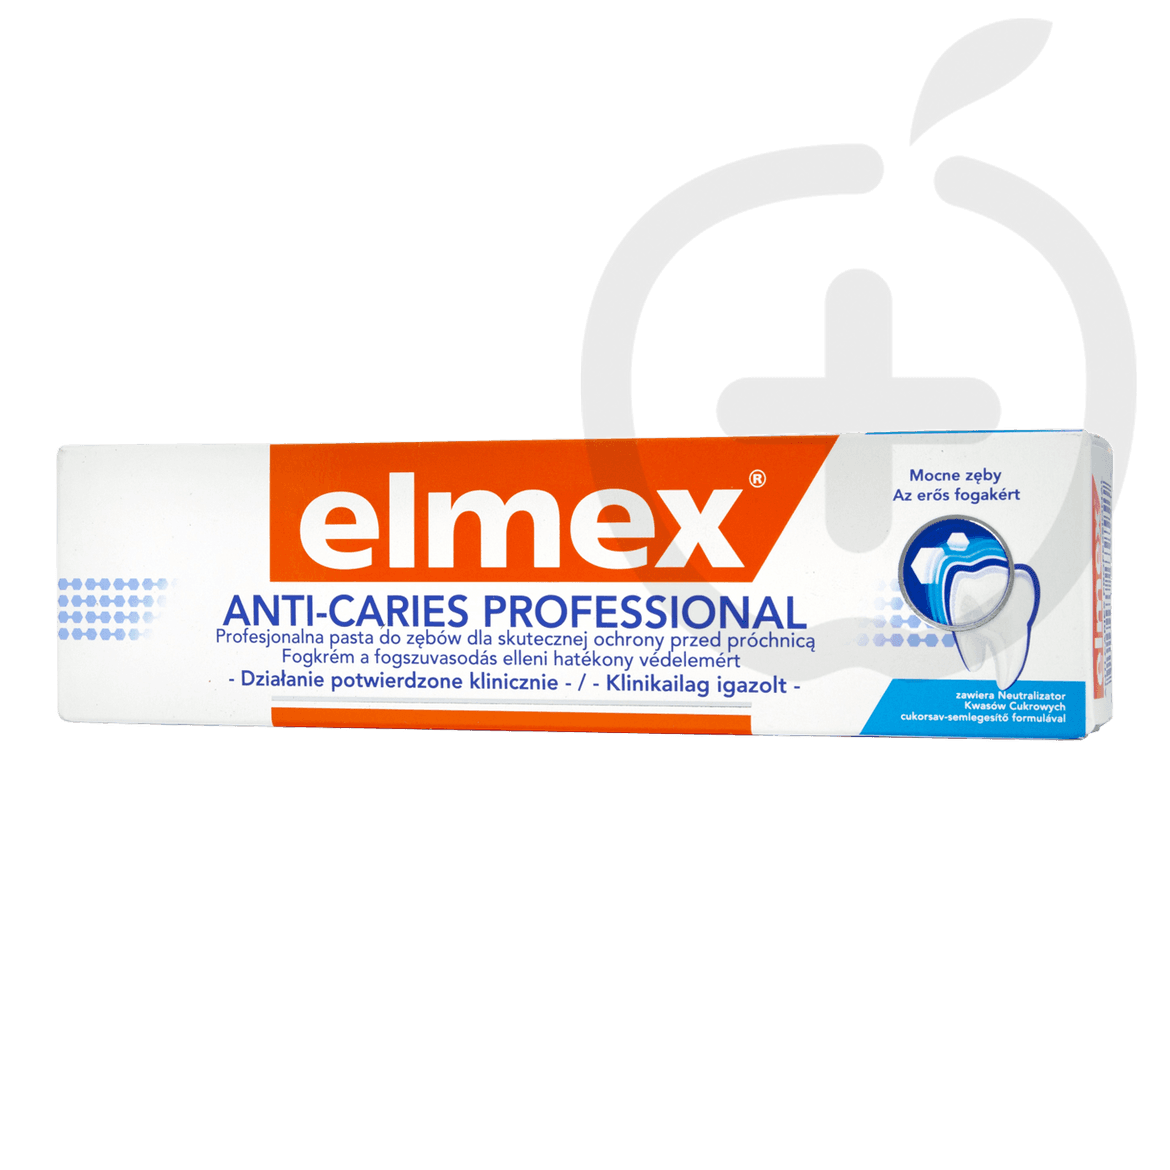 Elmex Anti-Caries Professional fogkrém